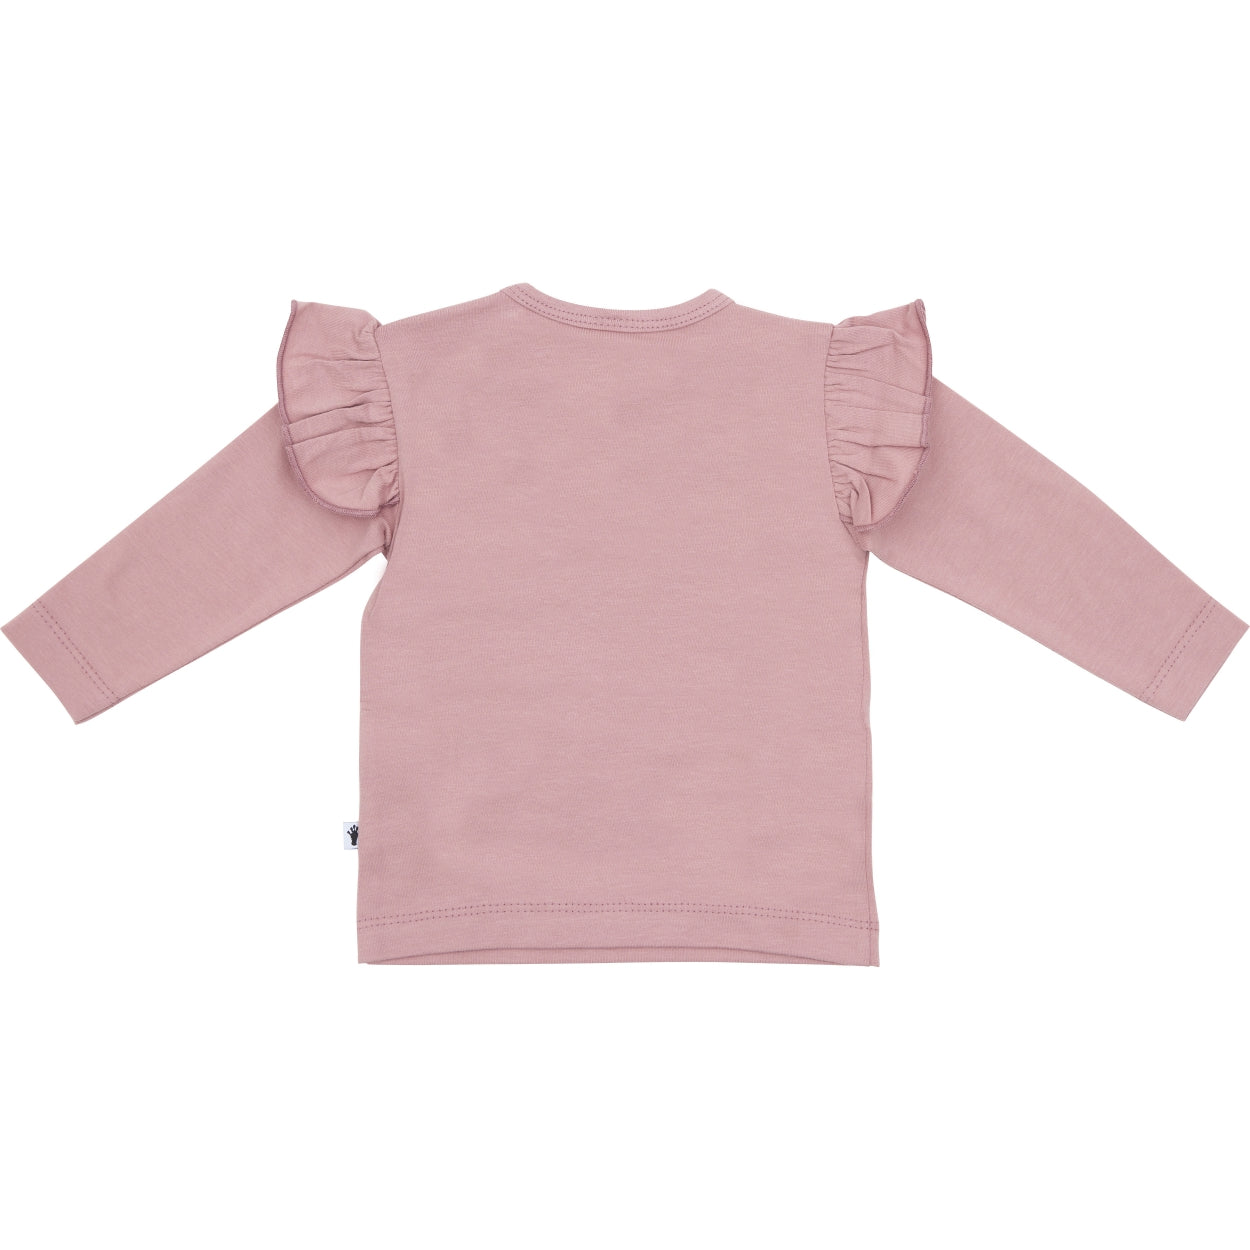 Meisjes Shirt Ruffle van Klein Baby in de kleur Dusty Rose in maat 86.